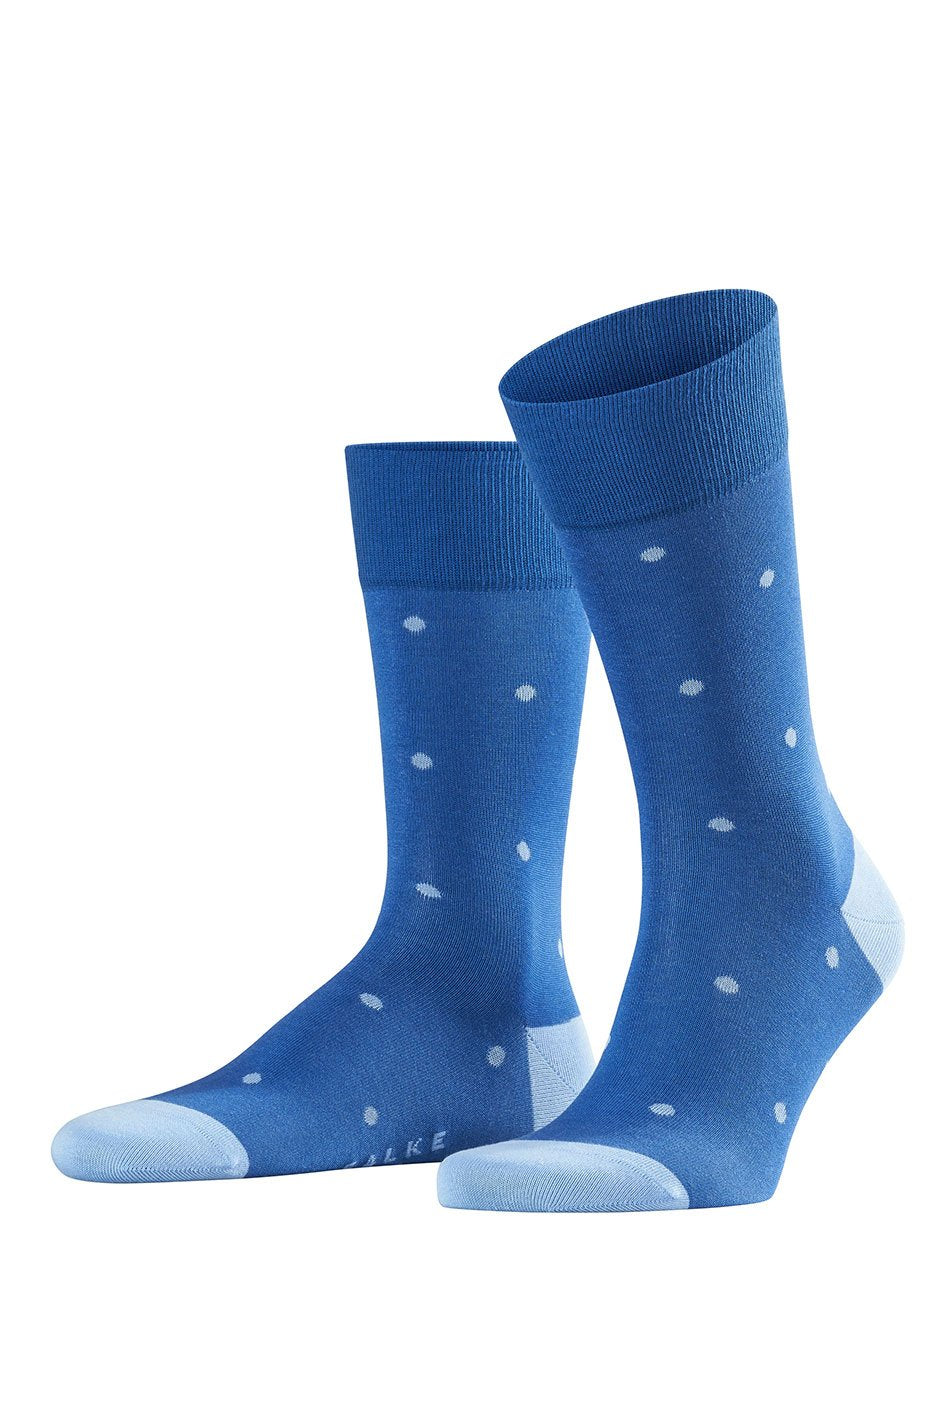 Falke Dot Men's Socks